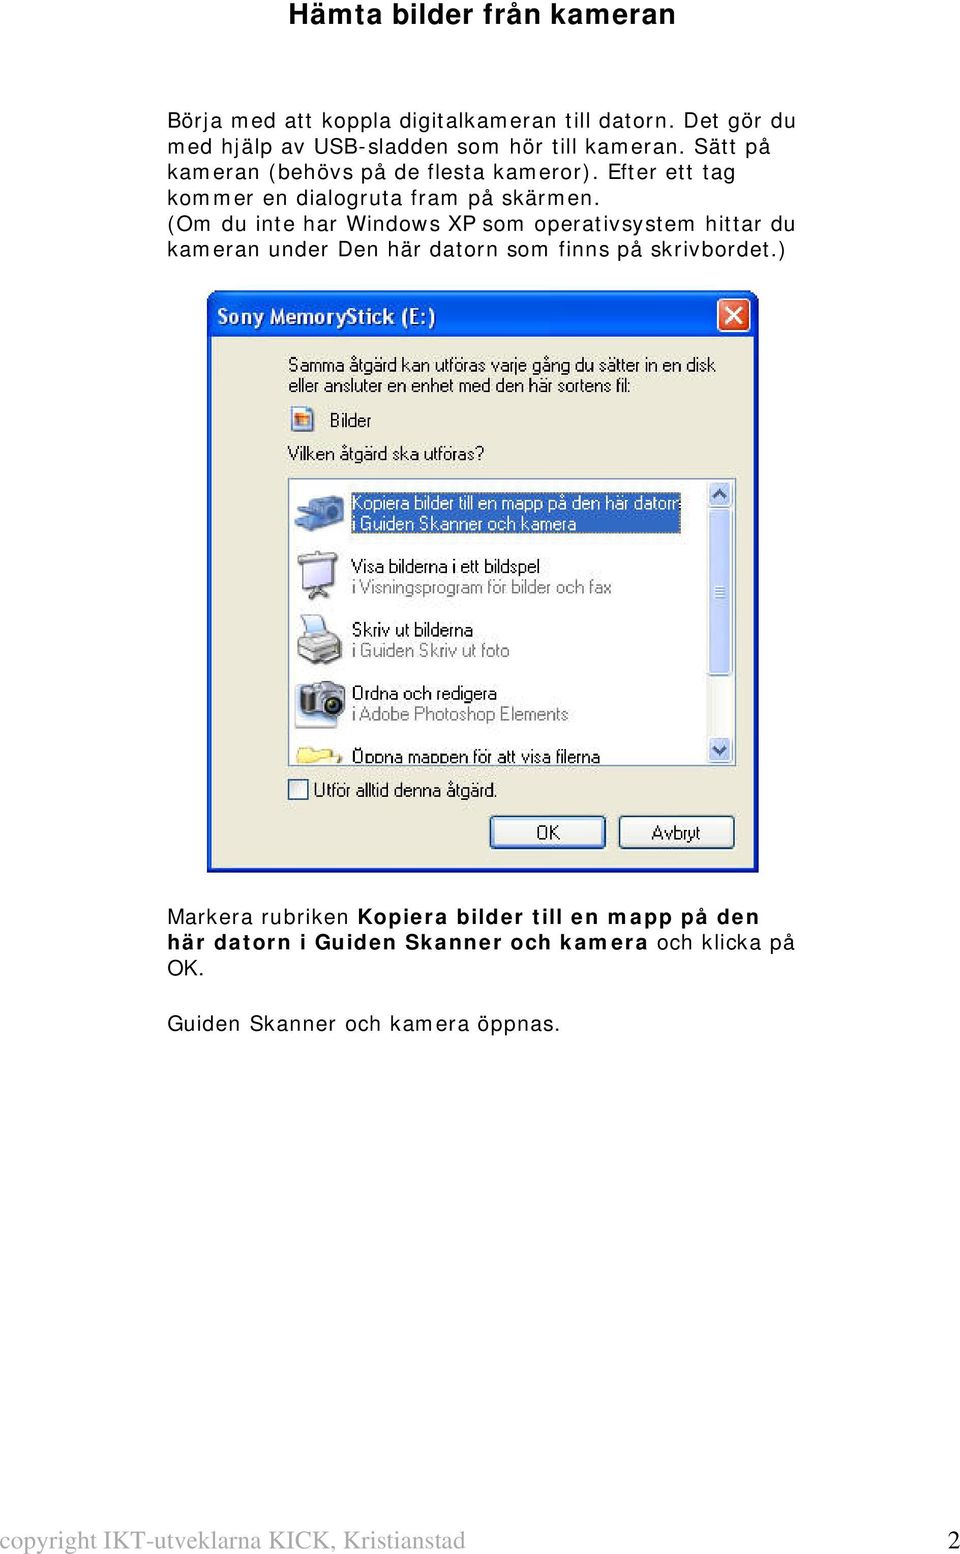 (Om du inte har Windows XP som operativsystem hittar du kameran under Den här datorn som finns på skrivbordet.